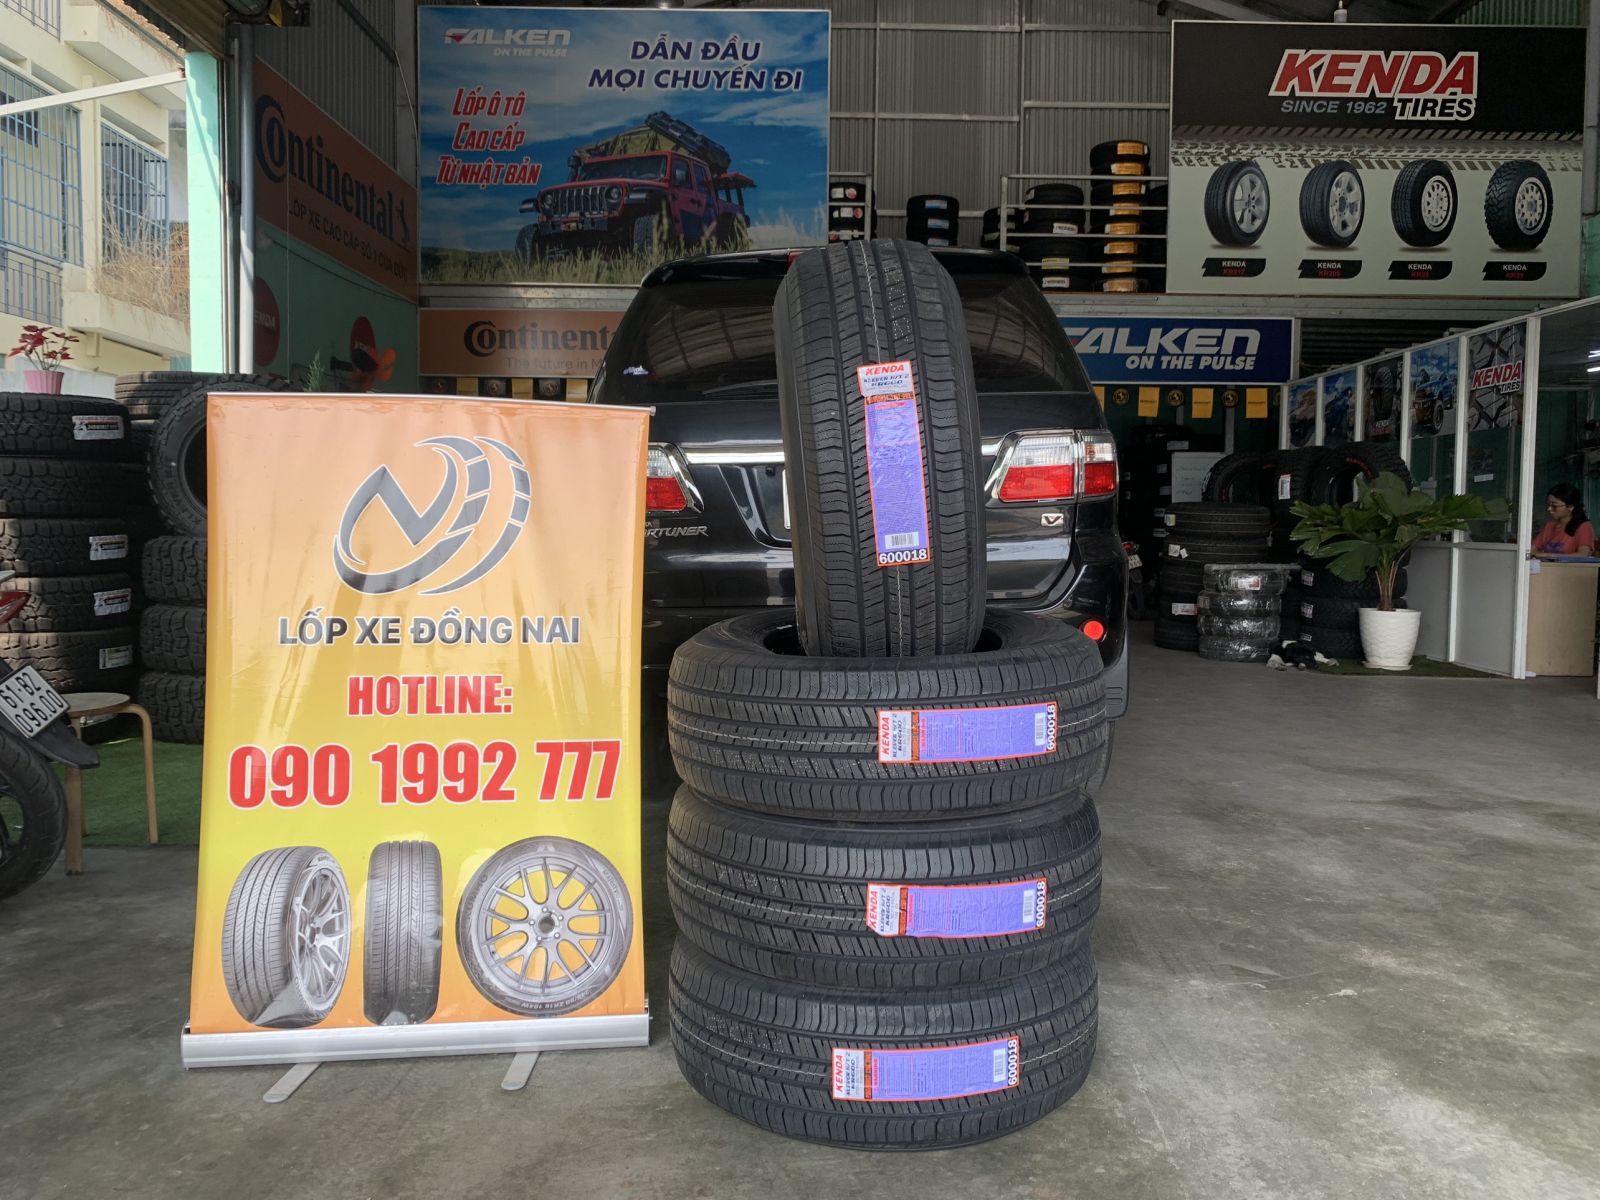 TƯ VẤN : Thay lốp xe Toyota Fortuner chính hãng ở Nhơn Trạch, Đồng Nai.